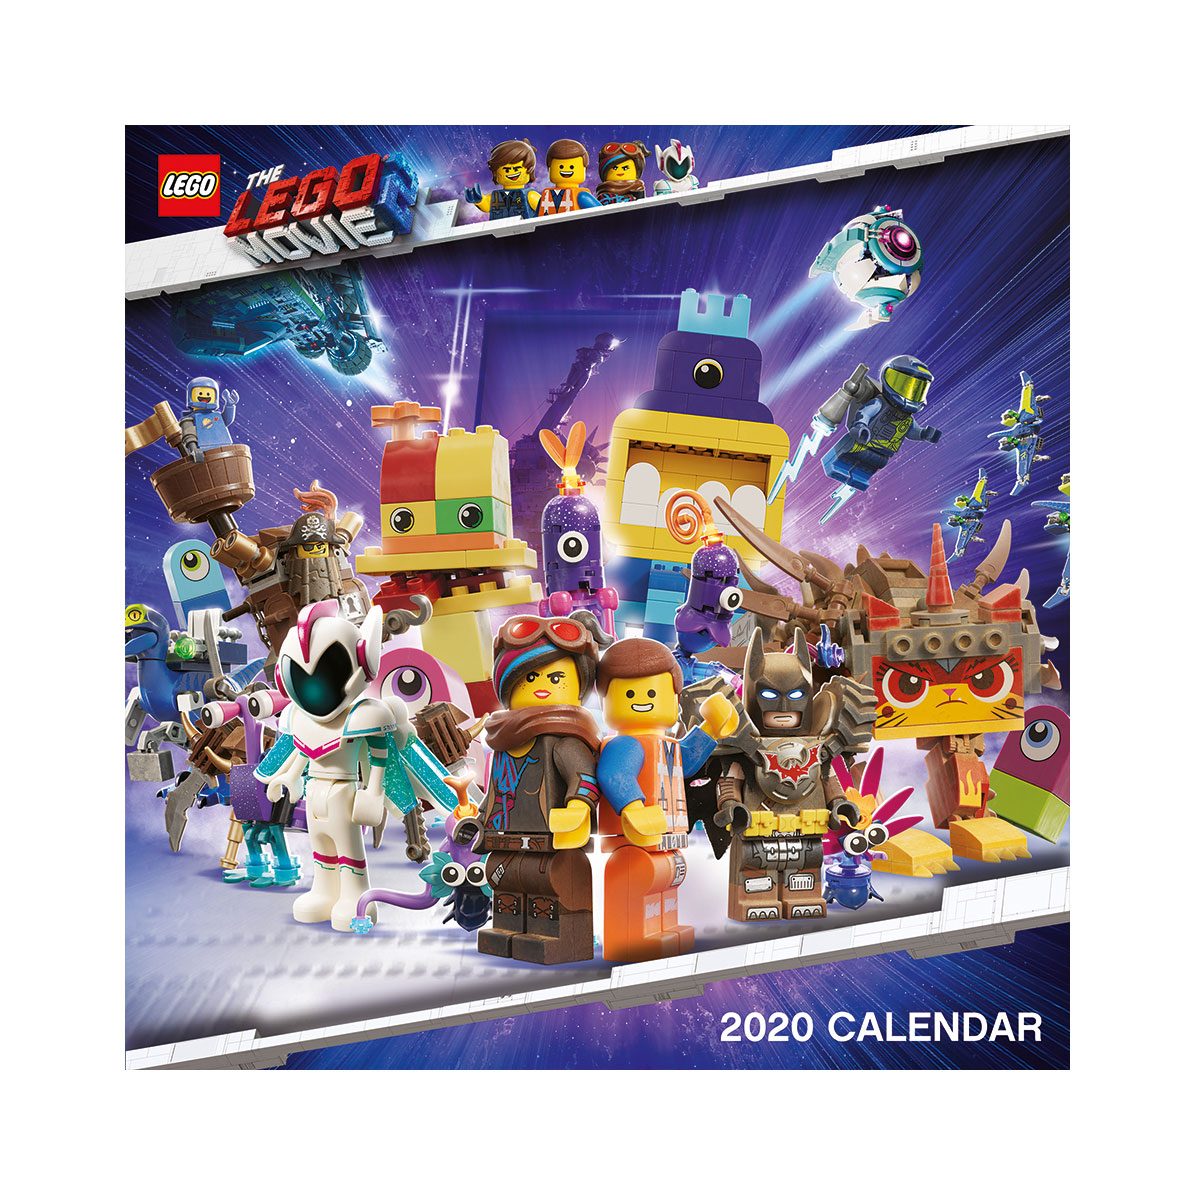 The LEGO Movie 2 Calendar 2020